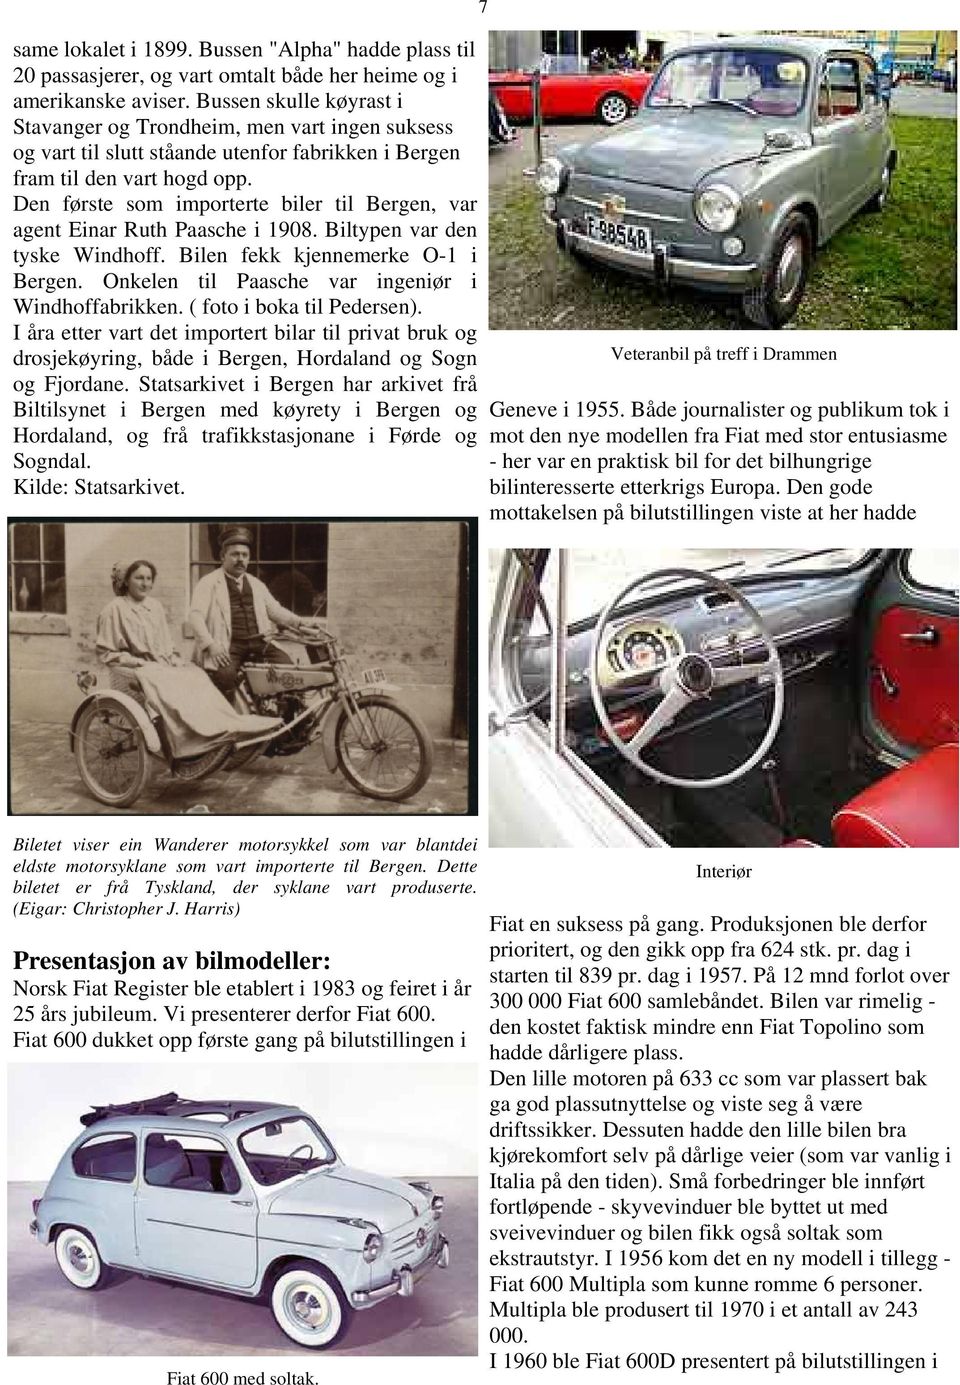 Den første som importerte biler til Bergen, var agent Einar Ruth Paasche i 1908. Biltypen var den tyske Windhoff. Bilen fekk kjennemerke O-1 i Bergen.